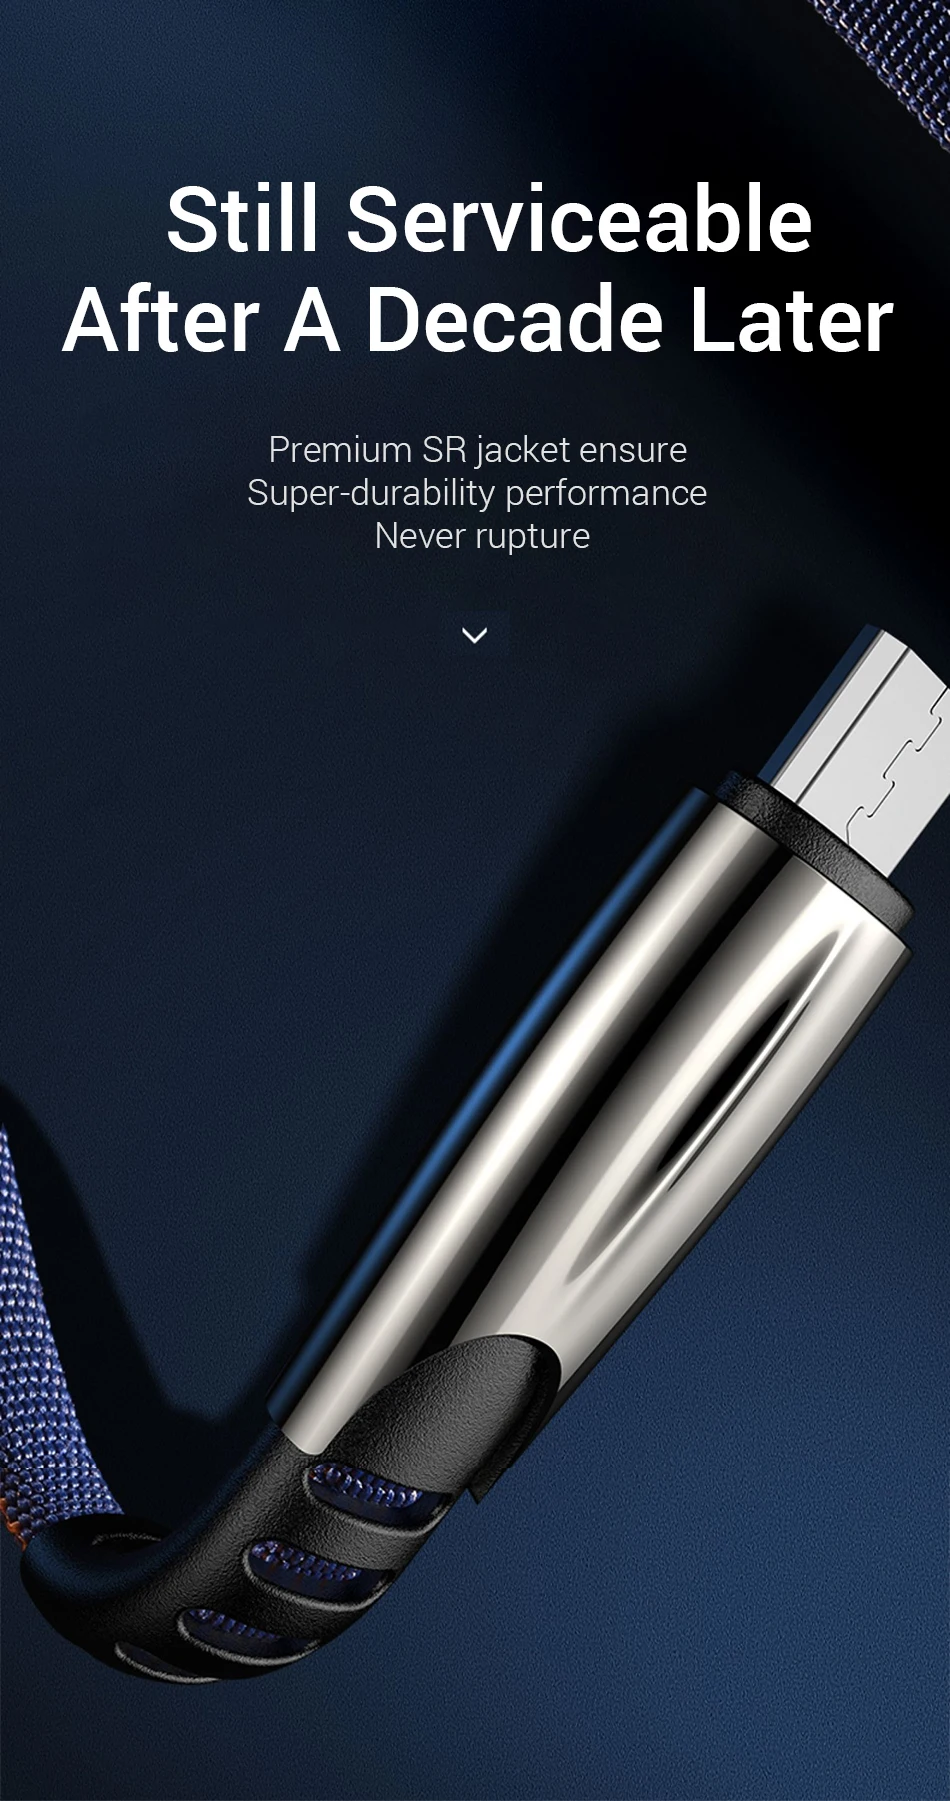 Micro USB кабель 3A Быстрая зарядка зарядное устройство для Xiaomi samsung Galaxy S7 S6 J7 Edge Note 5 LG Xbox PS4 Android USB кабель для передачи данных телефона